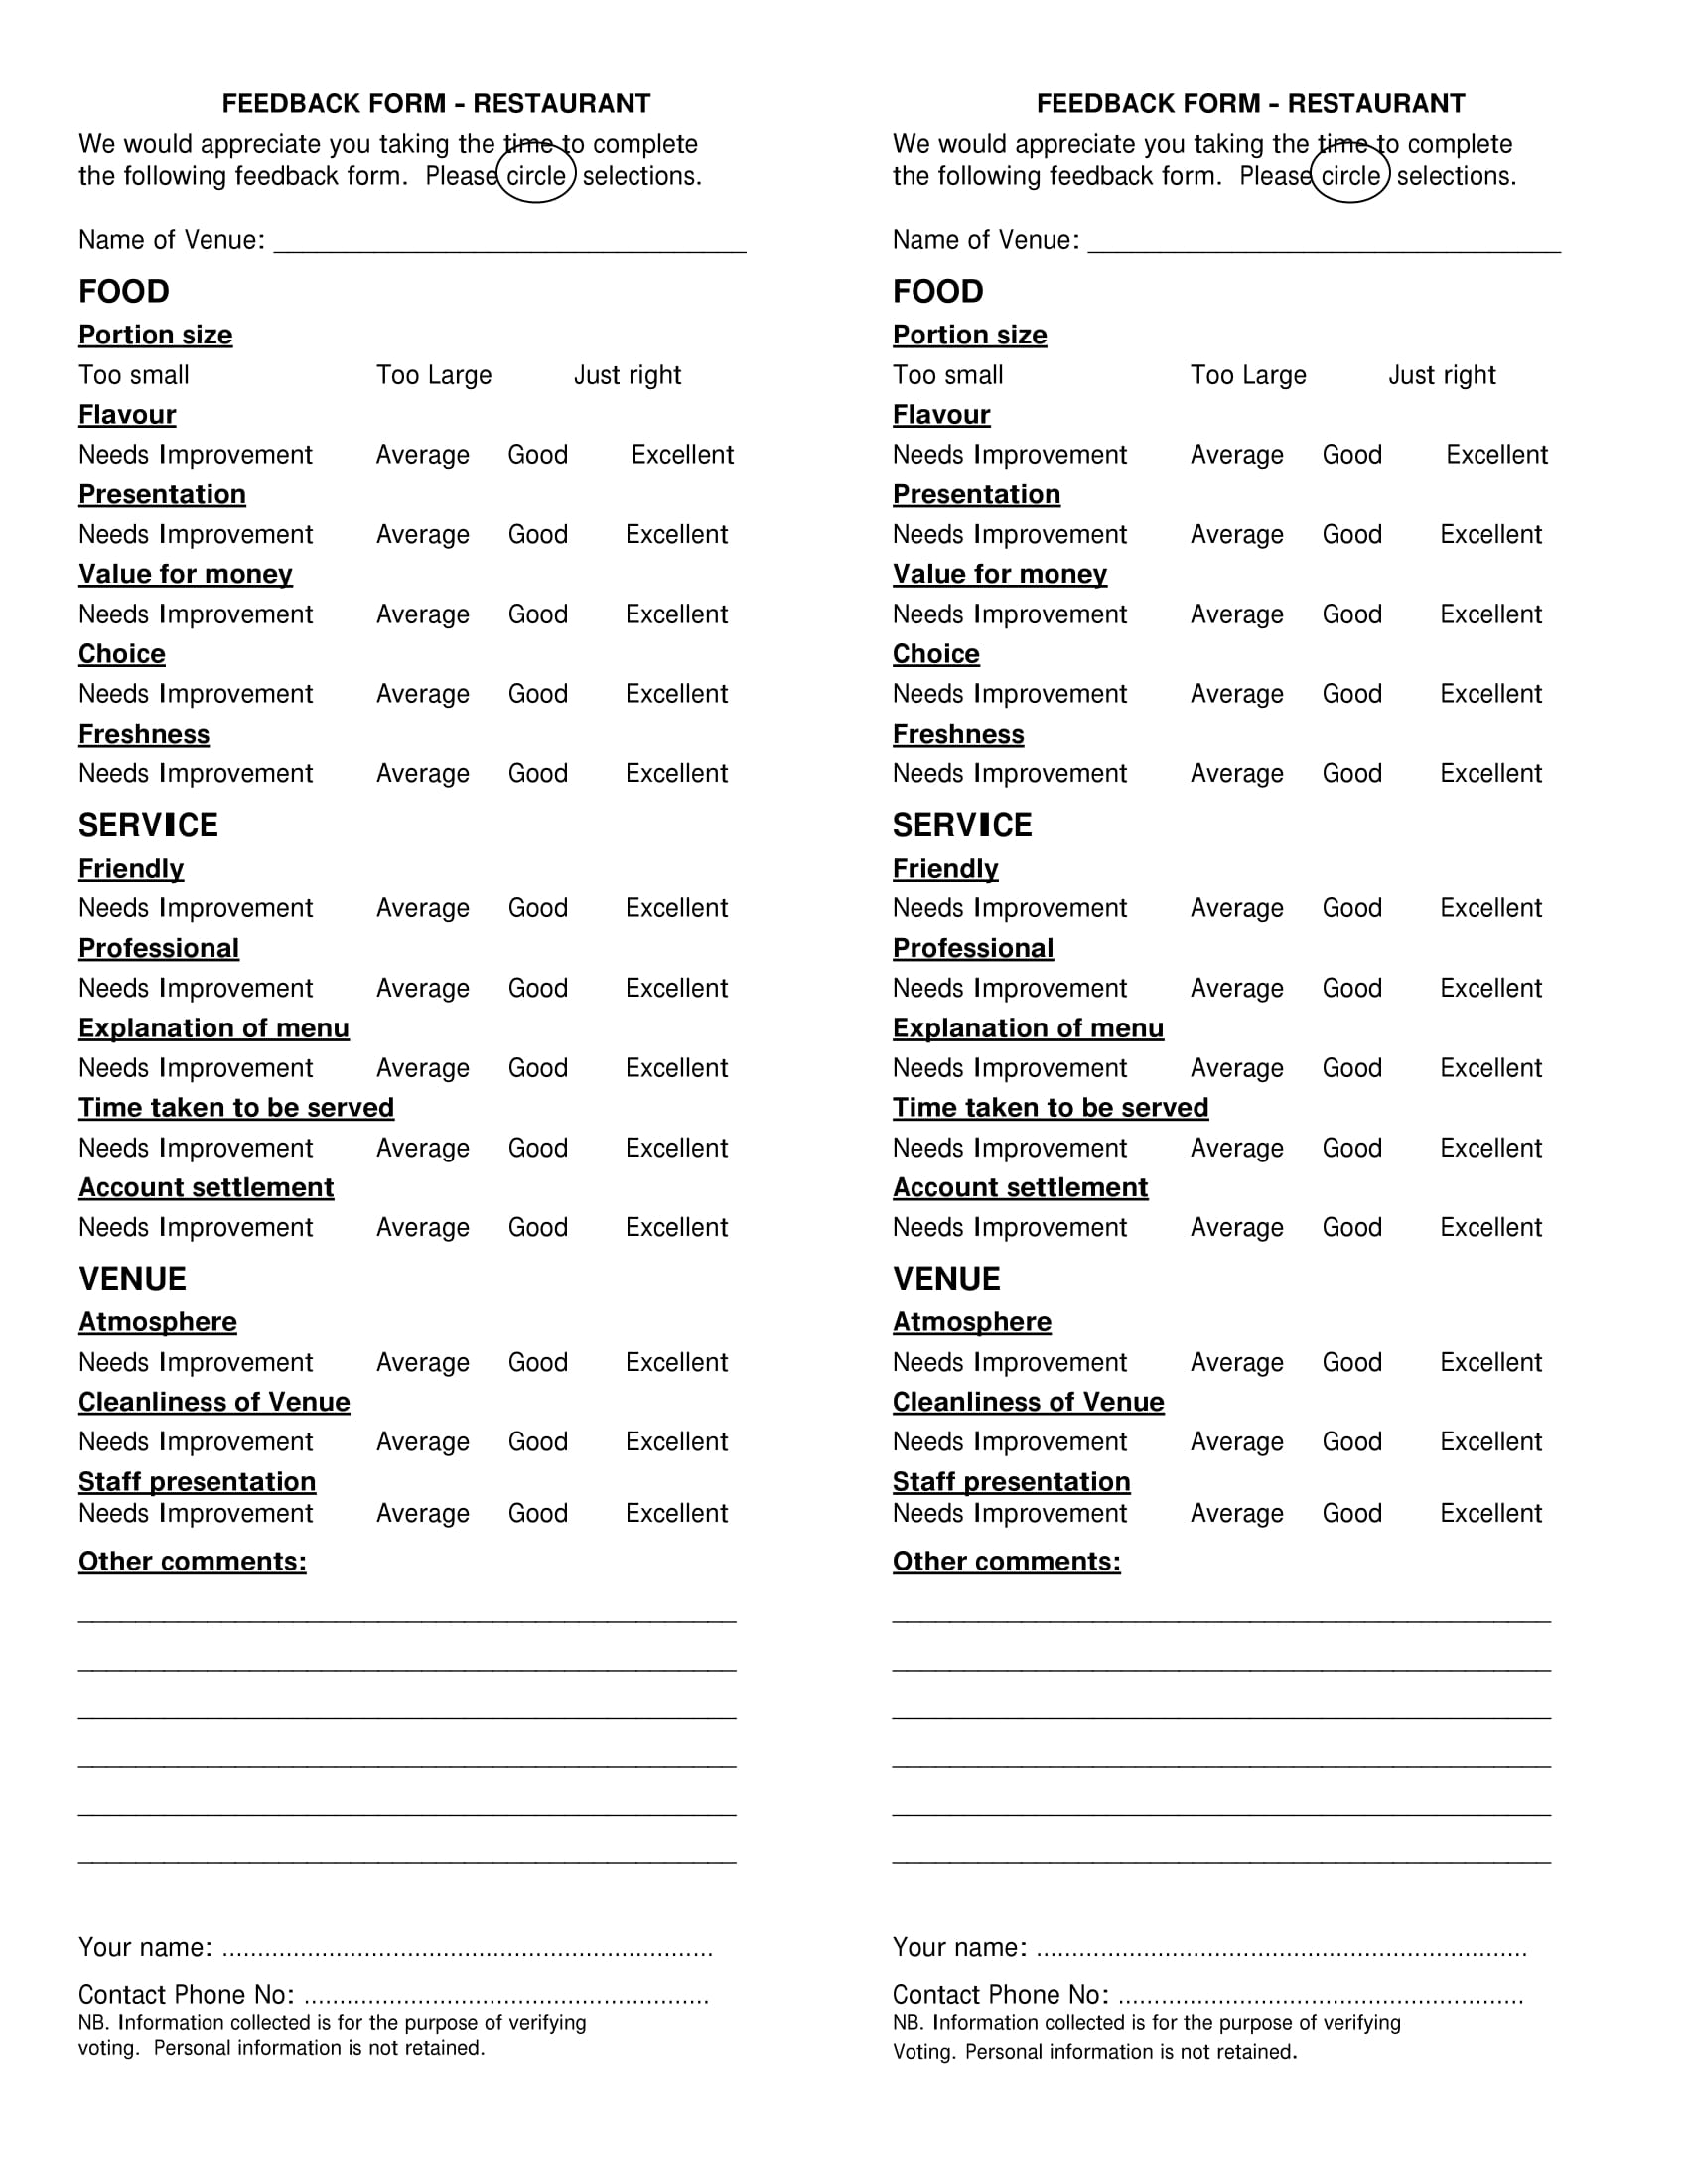 restaurant menu feedback form 1